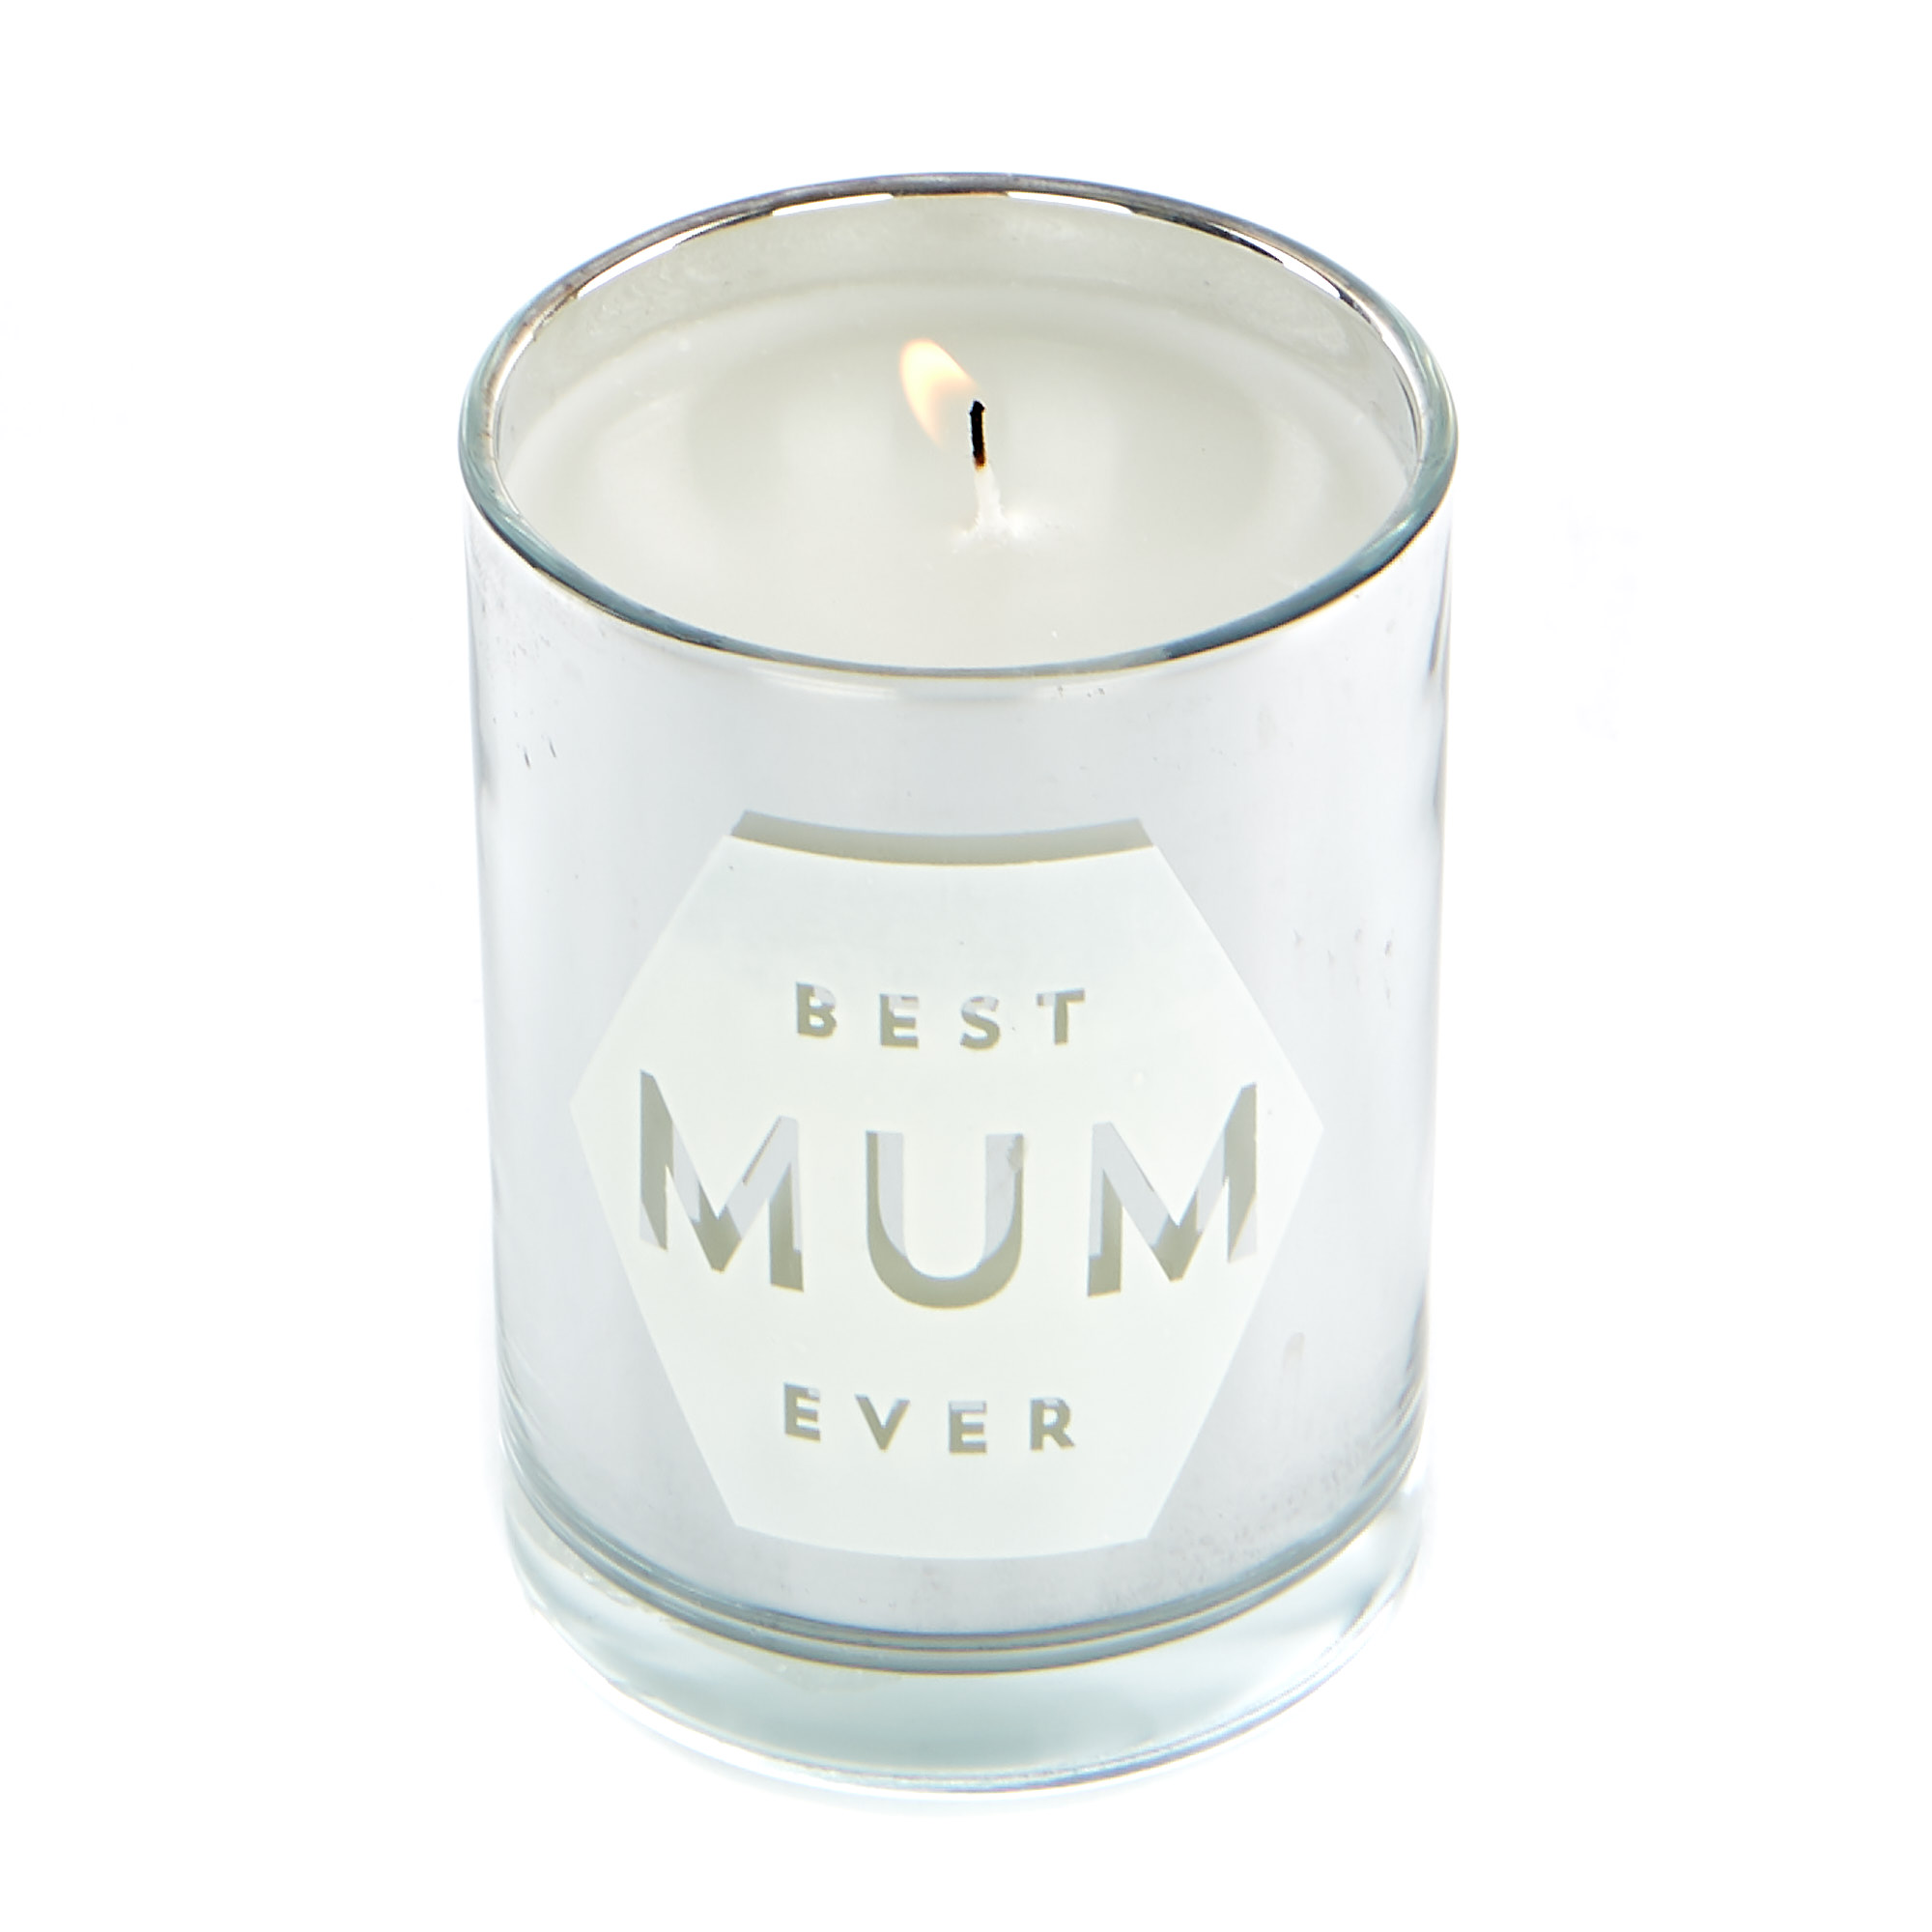 Best Mum Ever Vanilla Scented Candle